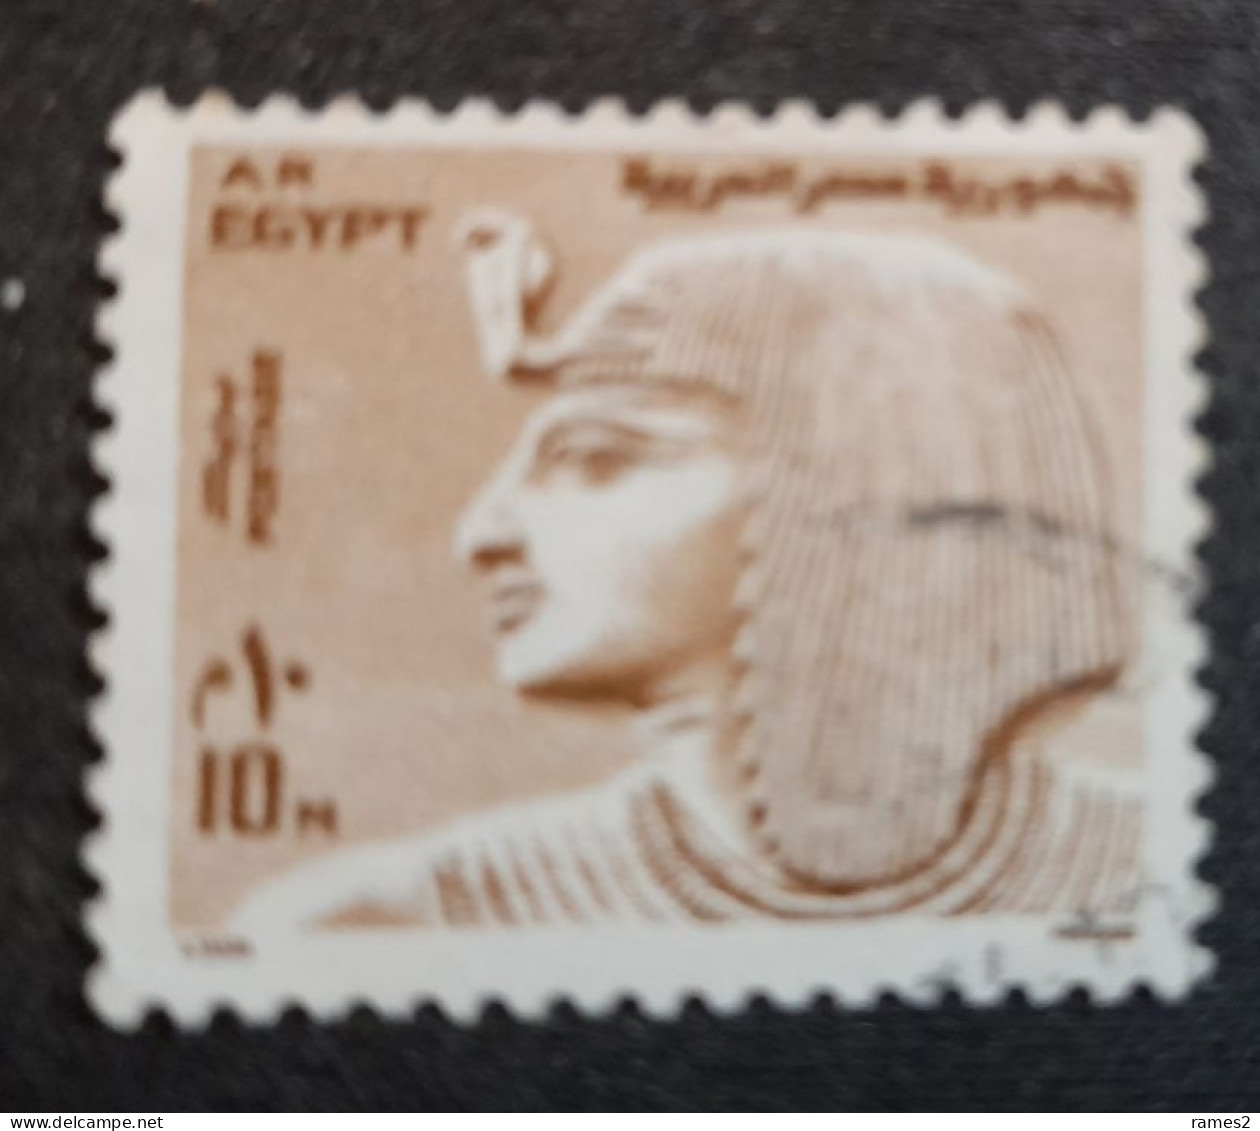 Egypte > 1953-..République   1970-79 > Oblitérés N°926 - Gebraucht